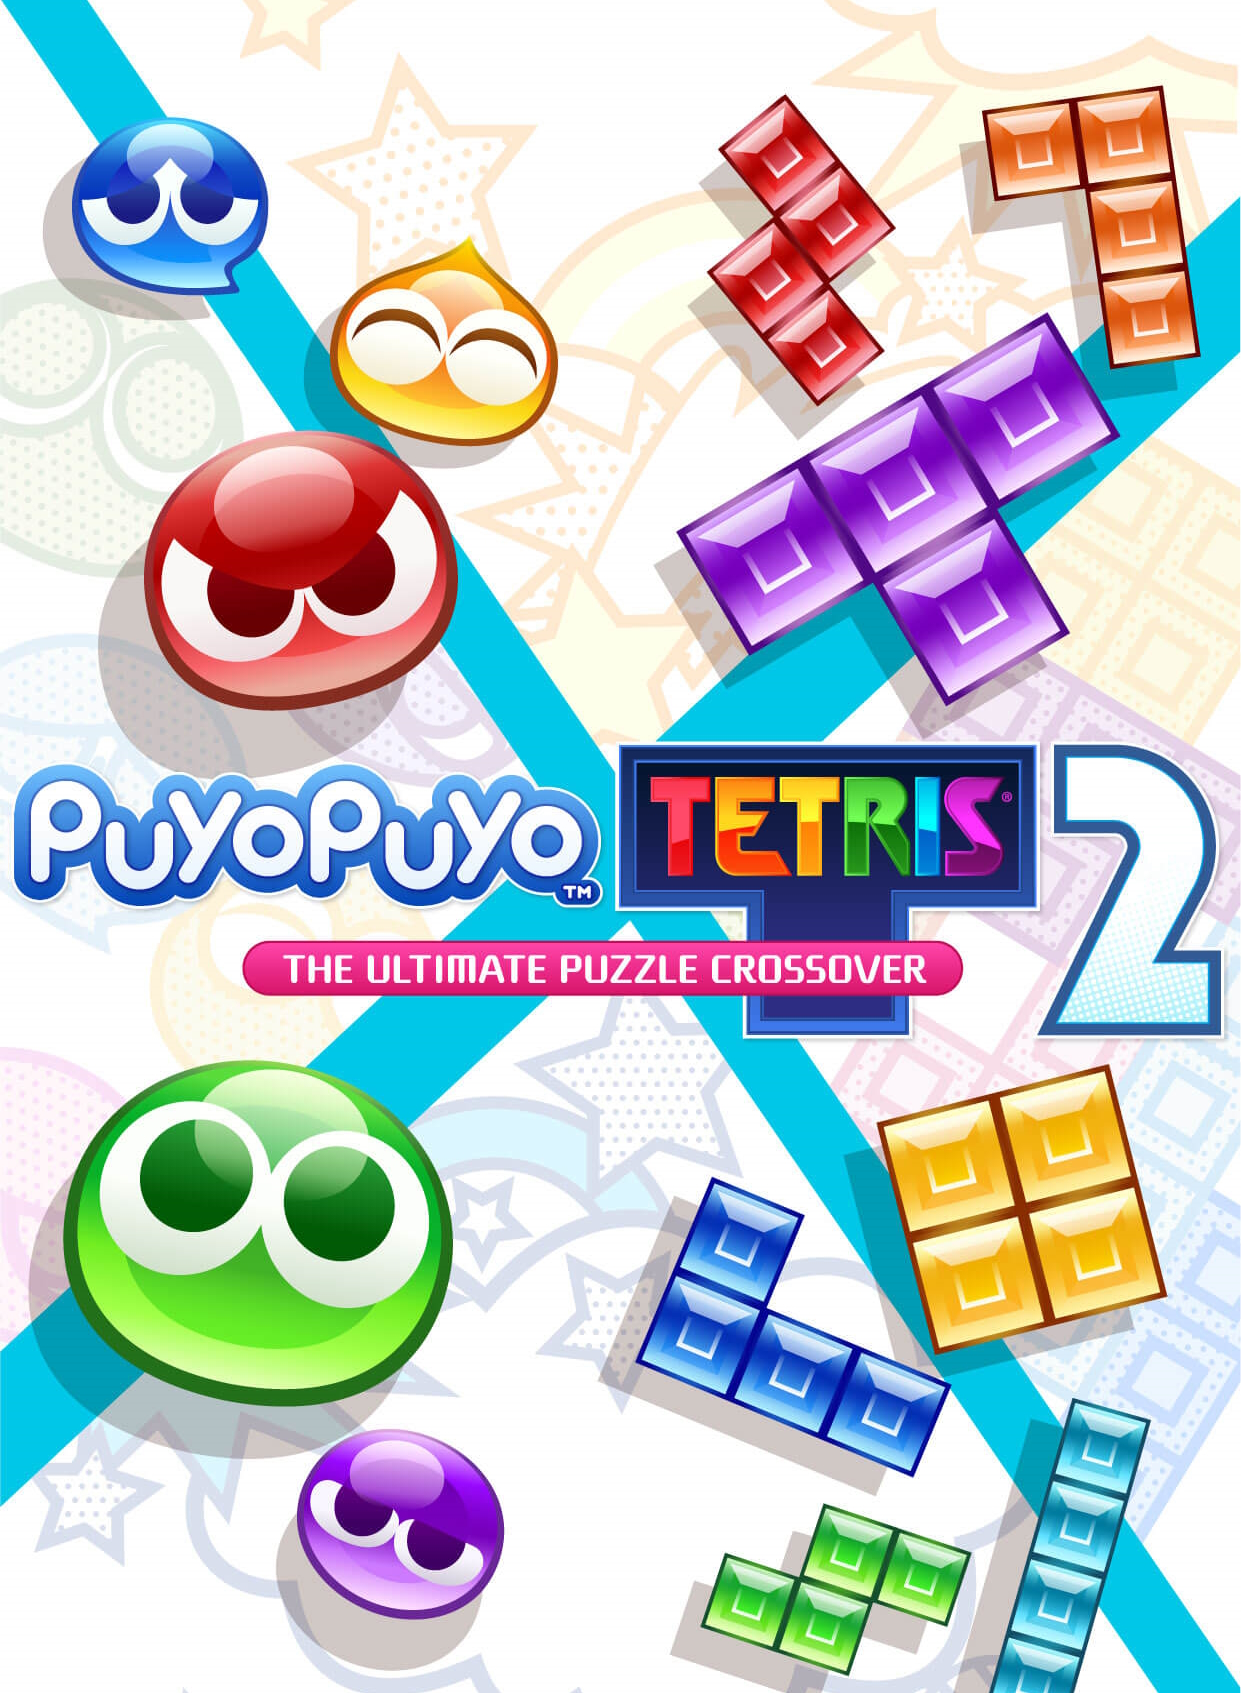 jaquette reduite de Puyo Puyo Tetris 2 sur PC